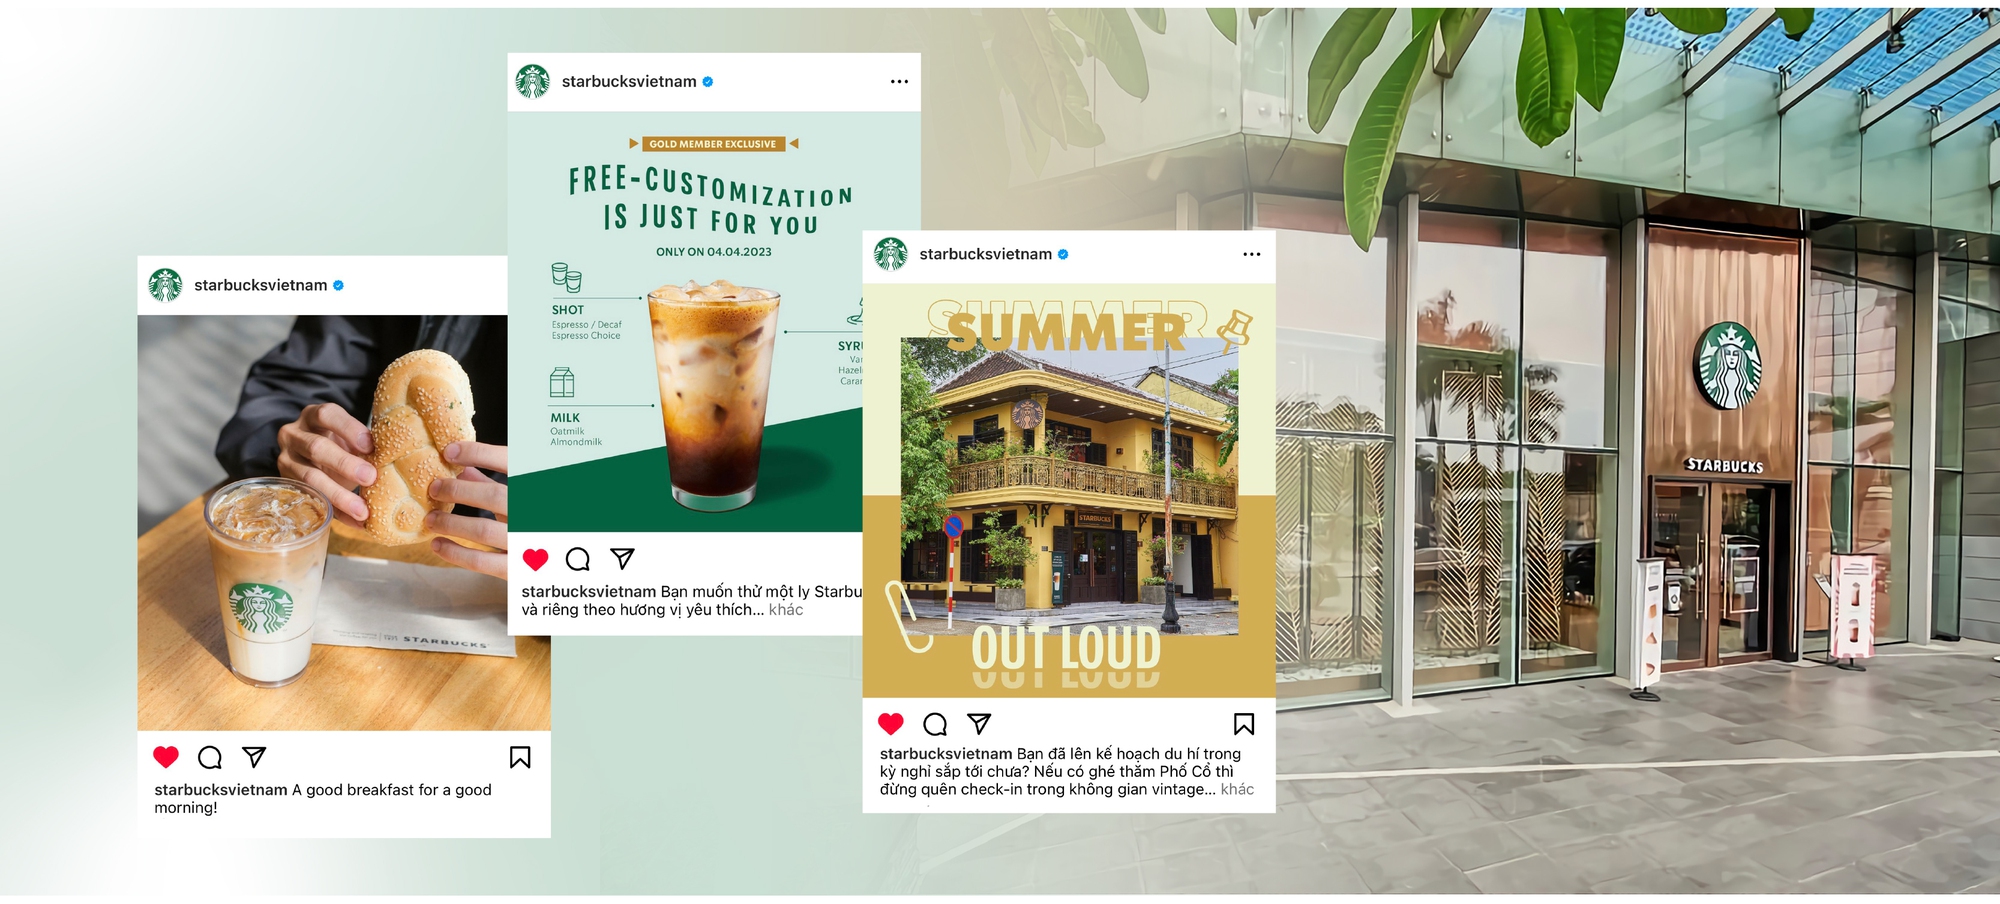 Starbucks Vietnam từ thương hiệu quốc tế đến dẫn dắt xu hướng cà phê Việt suốt một thập kỷ - Ảnh 3.